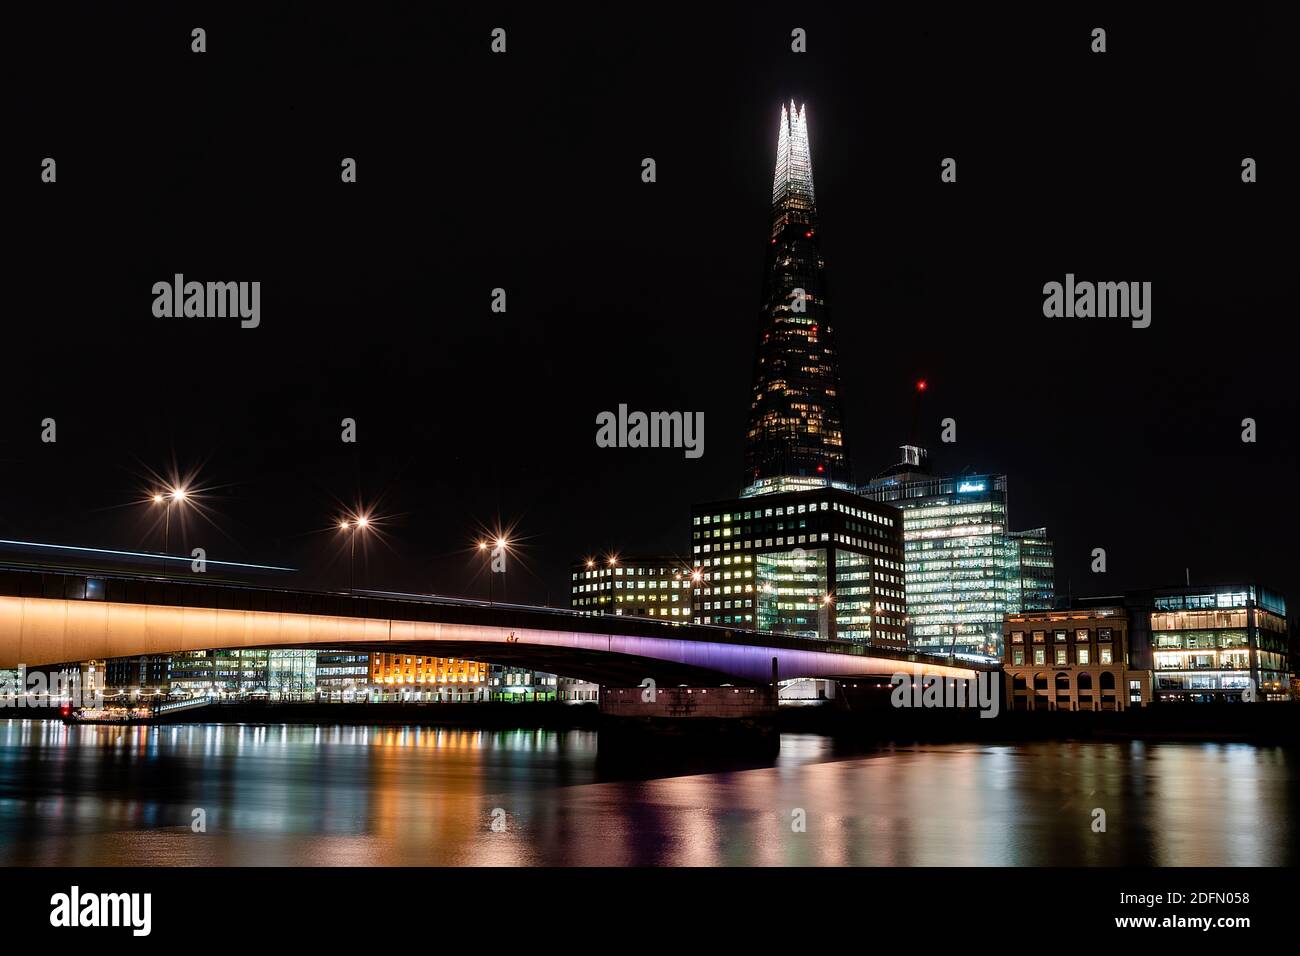 Londres, Reino Unido - Ene 2020: El Shard y el puente de Londres iluminados y reflejando en el Támesis. Exposición prolongada. Foto de stock